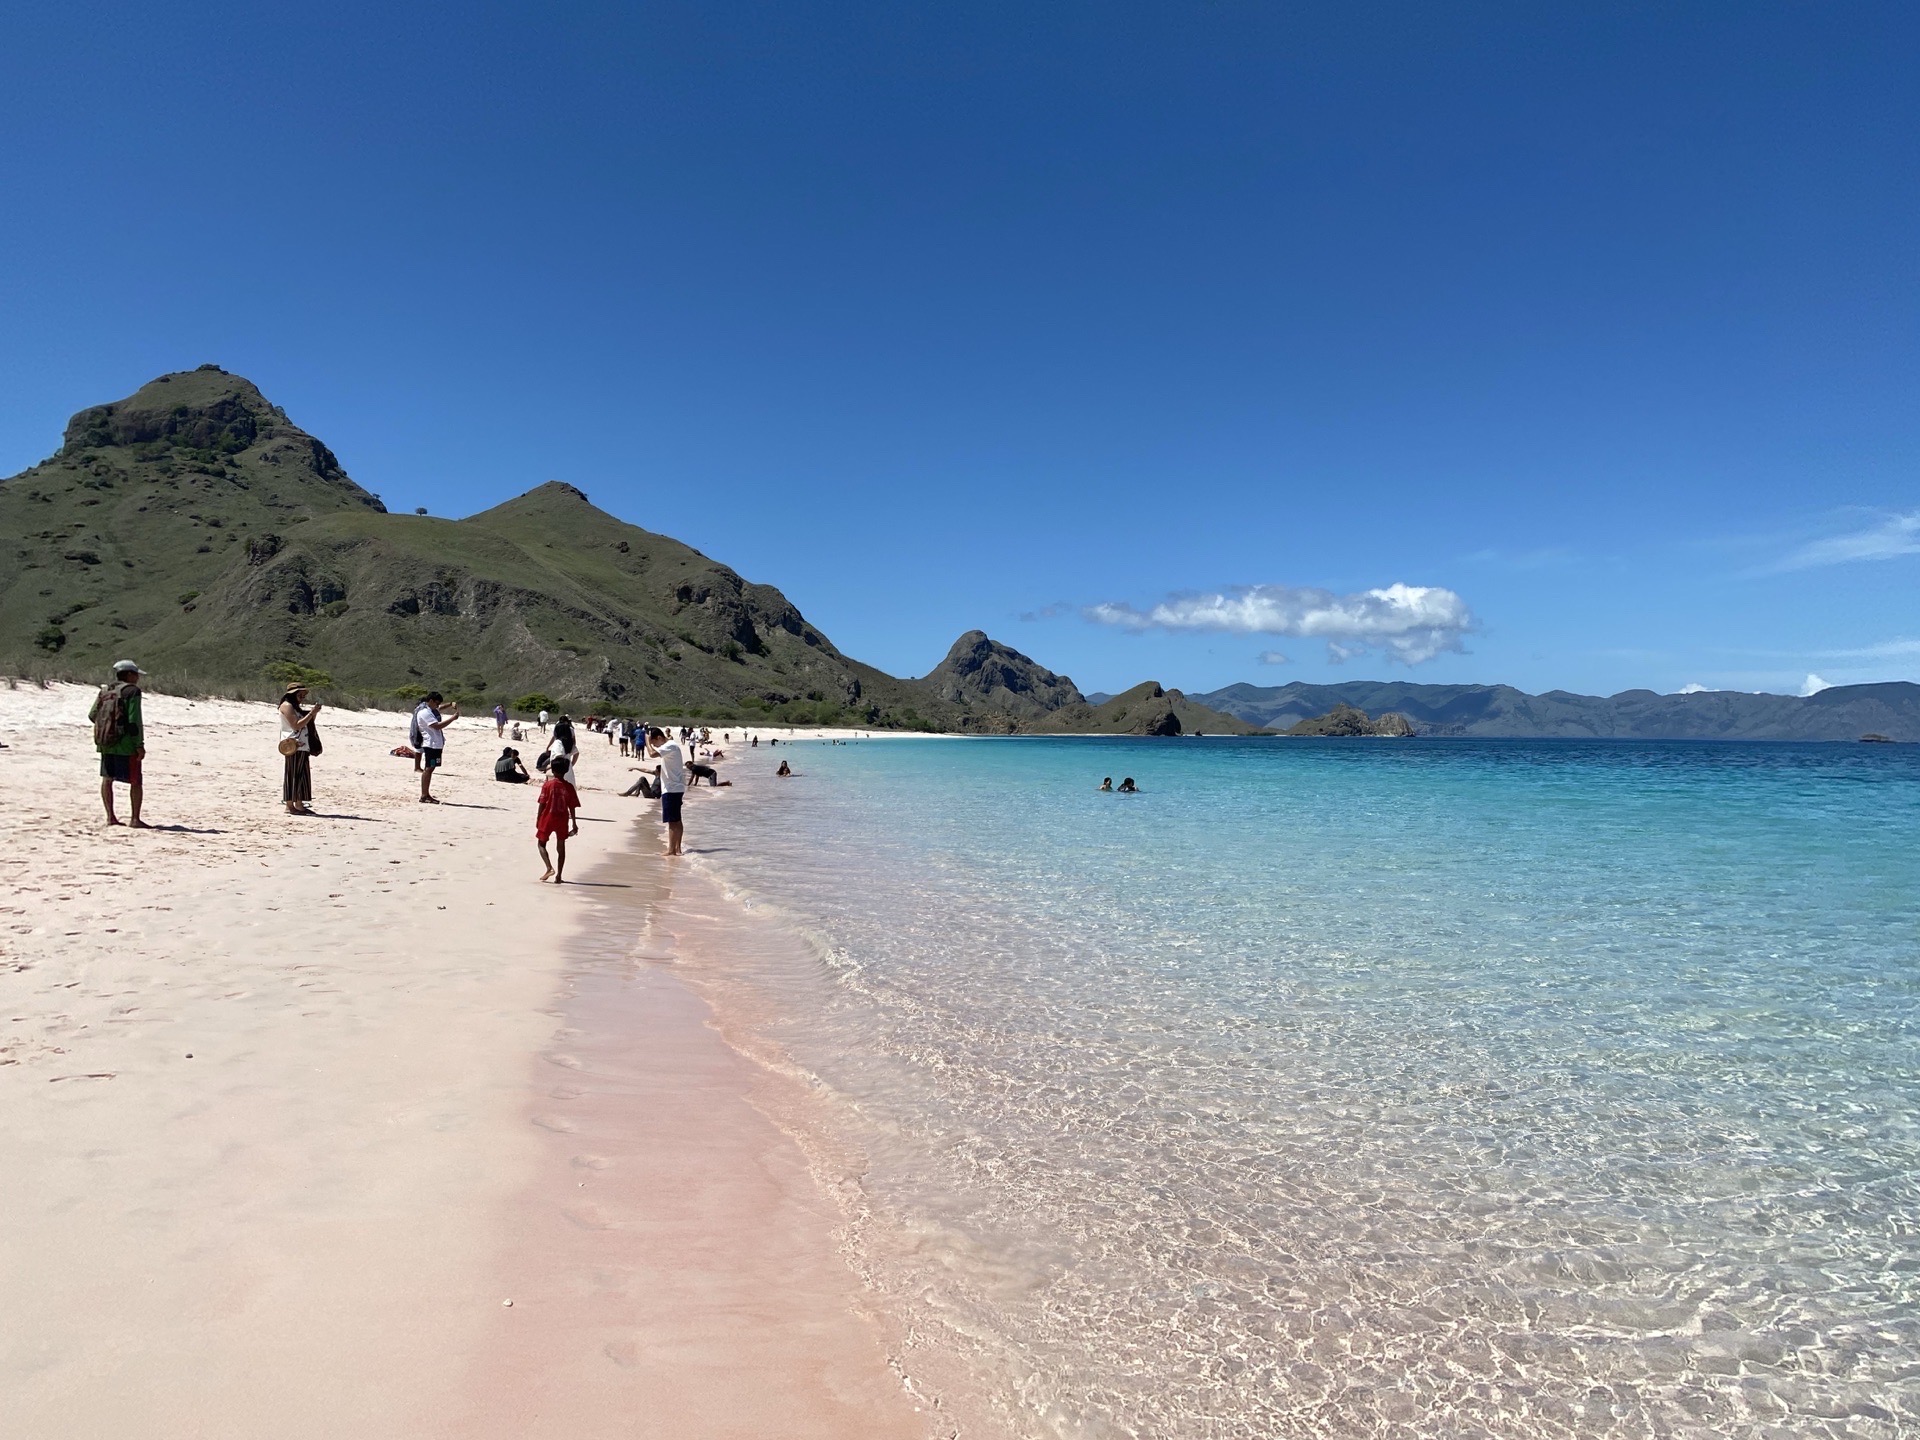 图一是粉红沙滩，但是粉的很不明显。图二是帕达尔岛，一岛四海湾。图三是一个拖尾沙滩。每天的活动就是上山